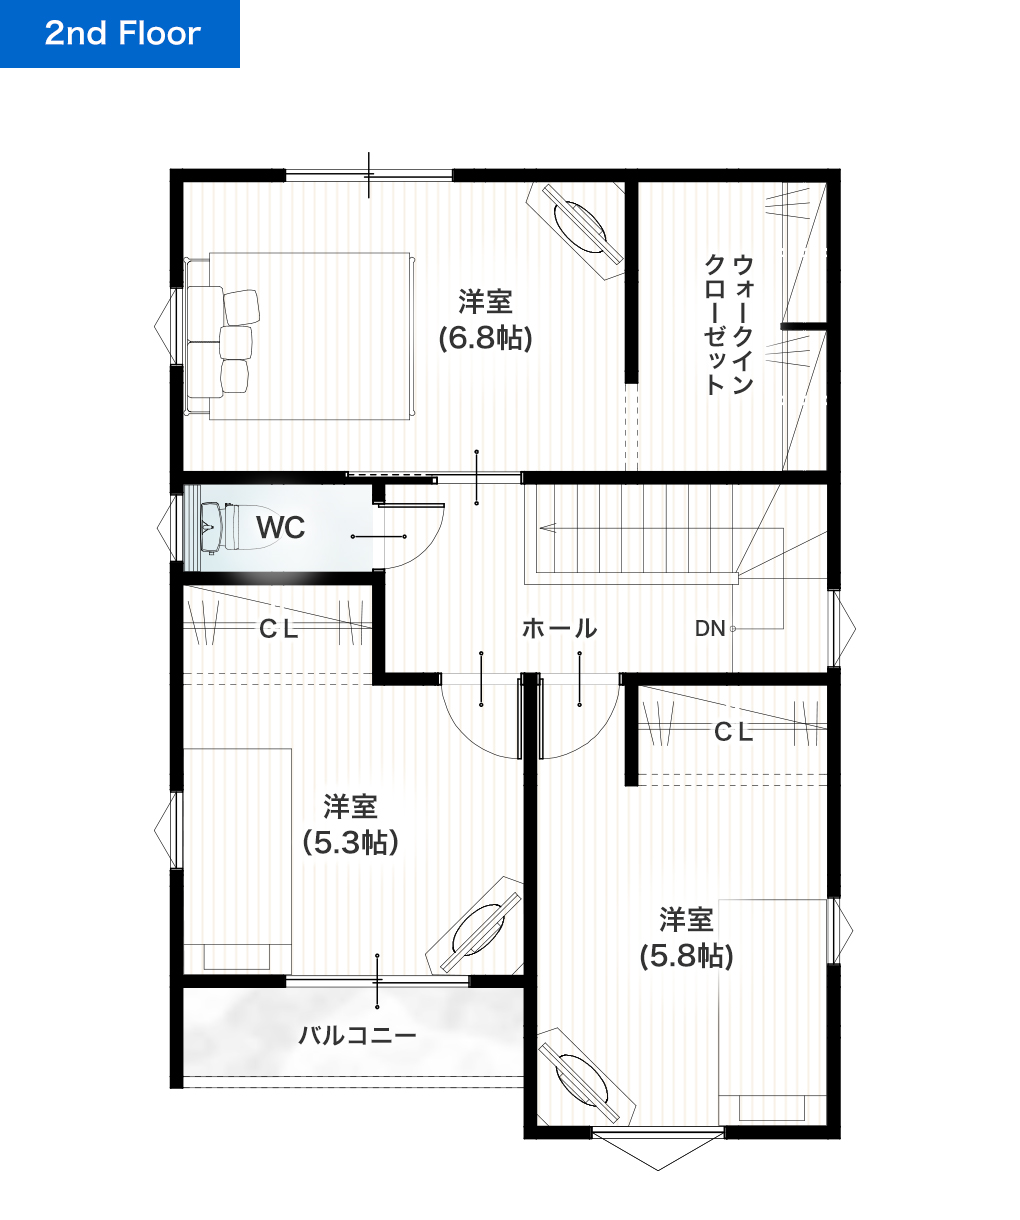 熊本市中央区国府本町2期2号地 28坪 4LDK 建売・一戸建ての新築物件 2階間取り図